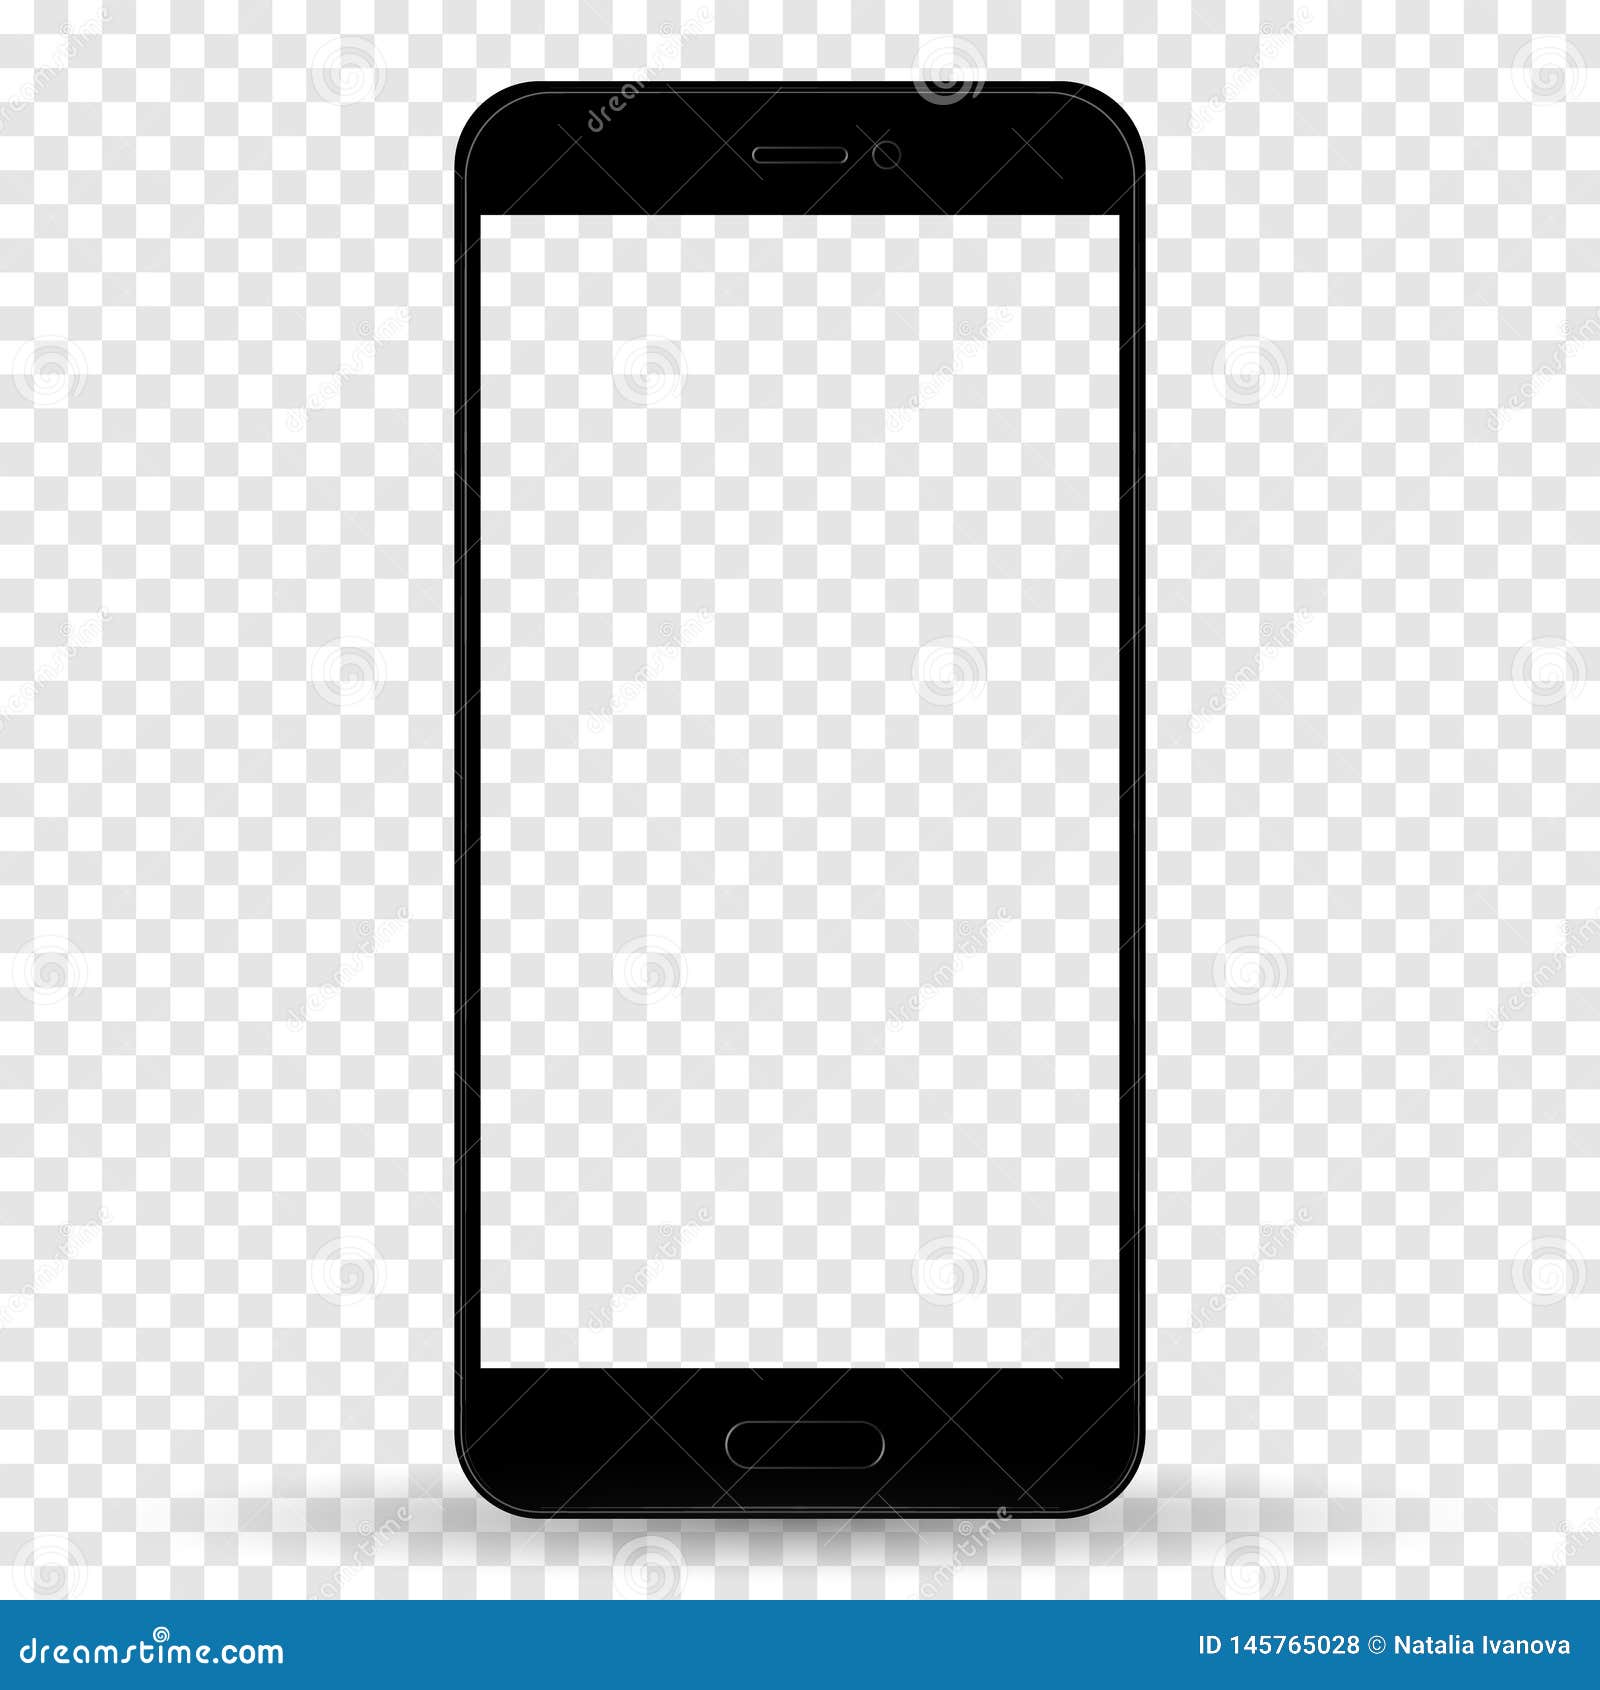 Bạn muốn sở hữu chiếc điện thoại Smartphone kiểu iPhone màu đen với màn hình cảm ứng trống đầy đặc biệt? Đây là chiếc điện thoại đúng cho bạn. Với thiết kế mới lạ và tính năng tuyệt vời, chiếc điện thoại này sẽ làm bạn hài lòng từ cái nhìn đầu tiên. 